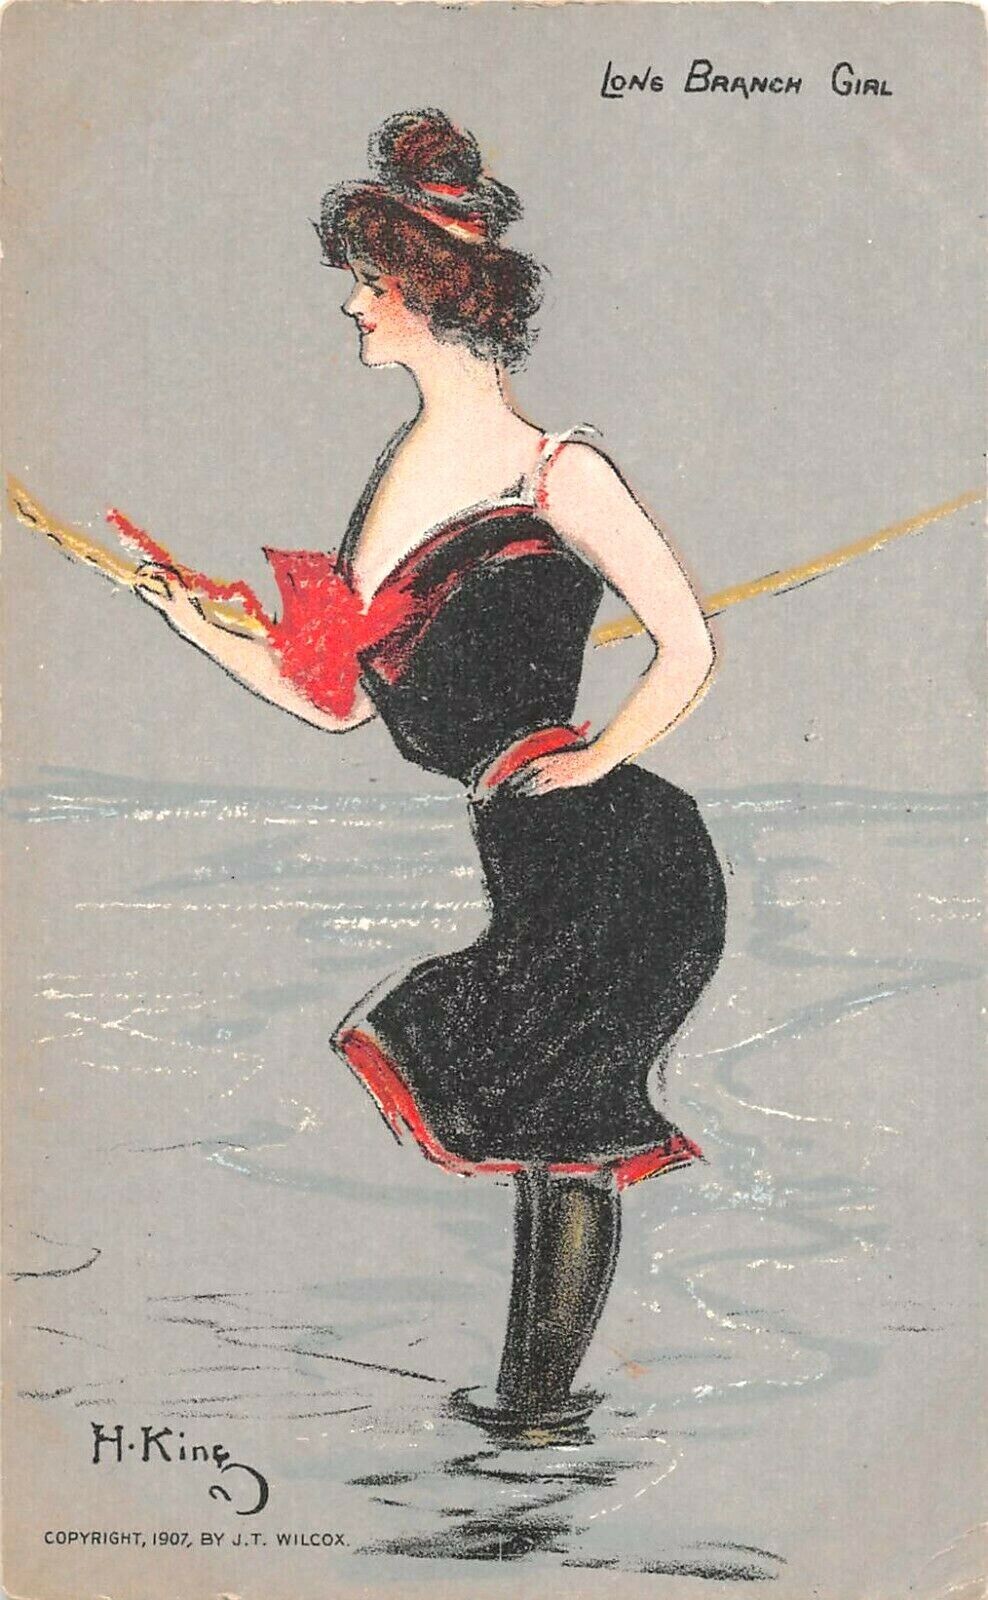 1907 artist sgd. H. King Bathing Long Branch Girl NJ post card